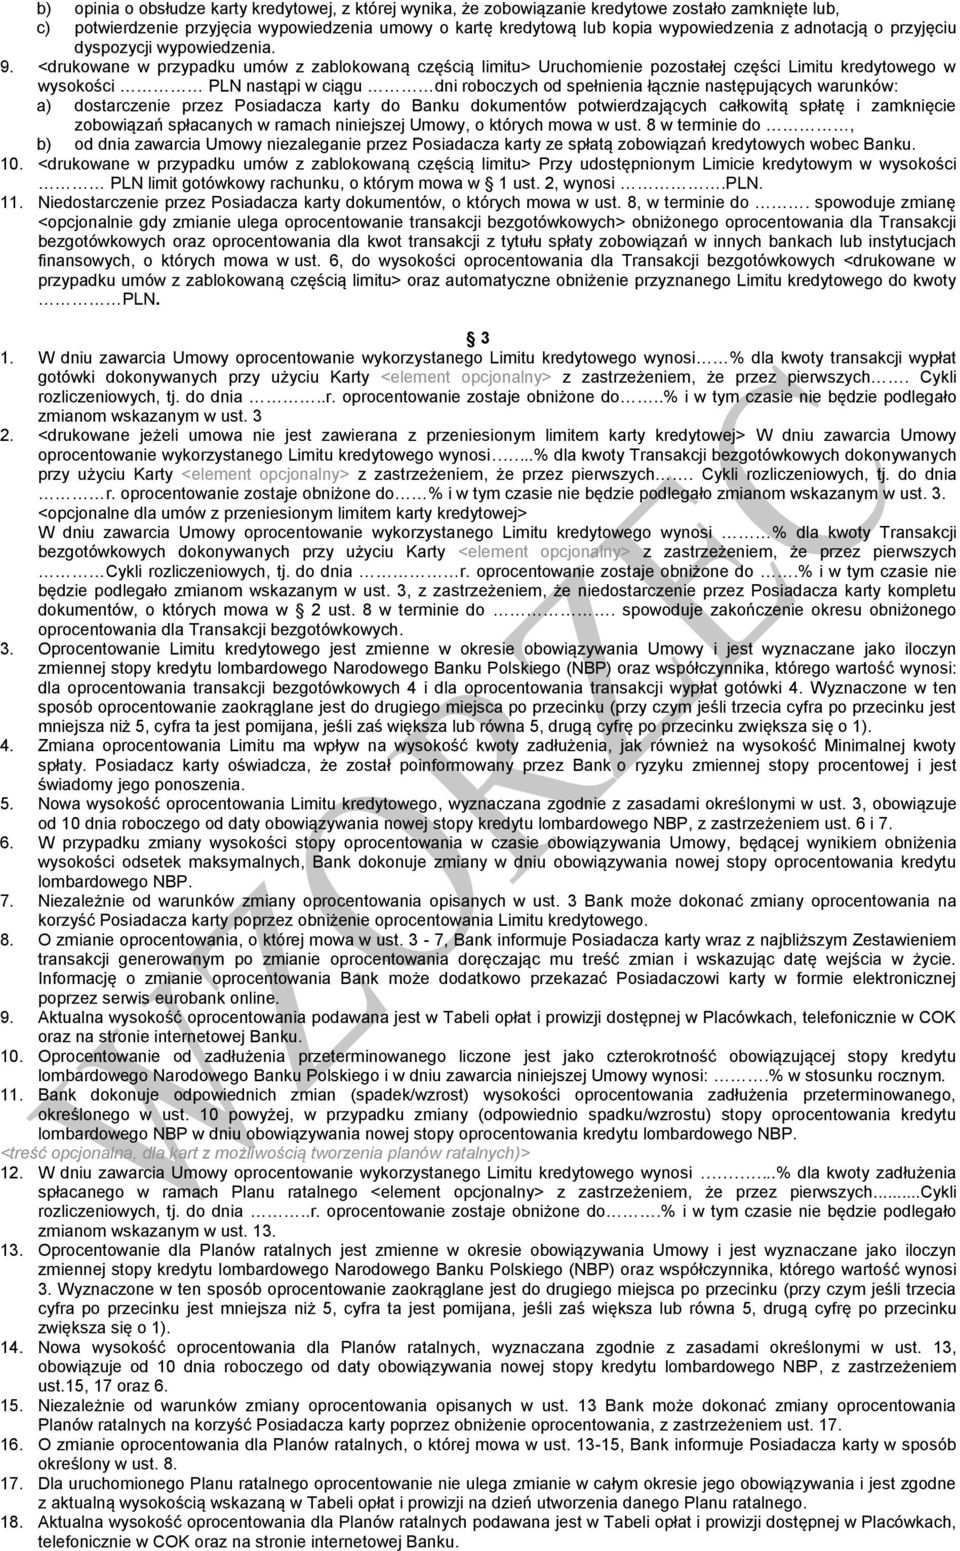 <drukowane w przypadku umów z zablokowaną częścią limitu> Uruchomienie pozostałej części Limitu kredytowego w wysokości PLN nastąpi w ciągu dni roboczych od spełnienia łącznie następujących warunków: